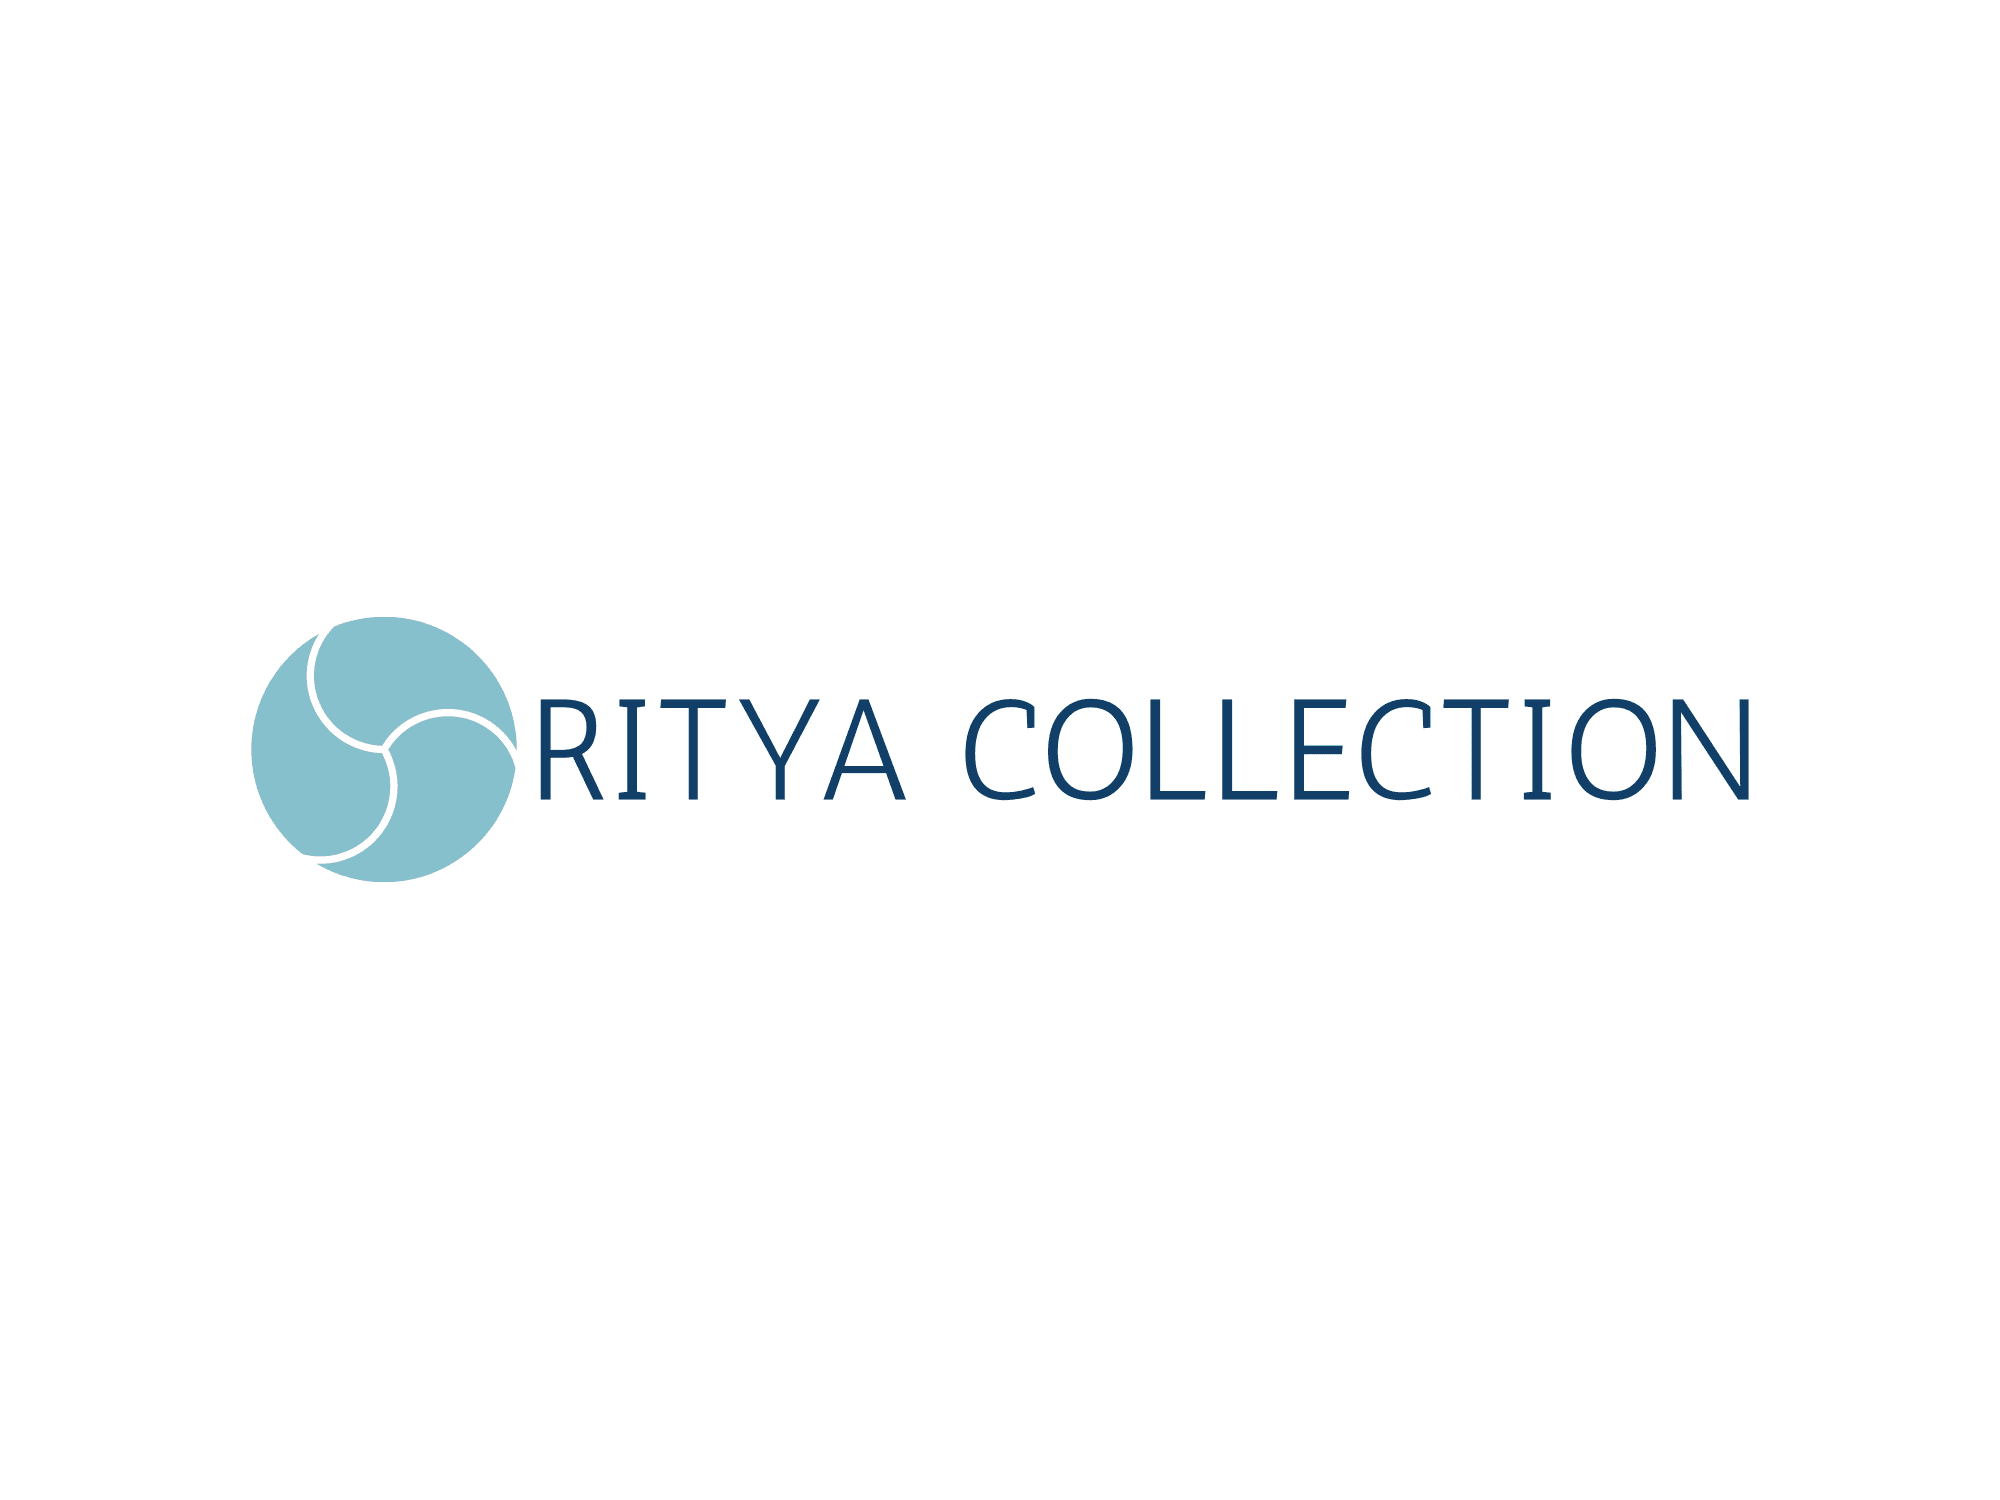 RITYA COLLECTION